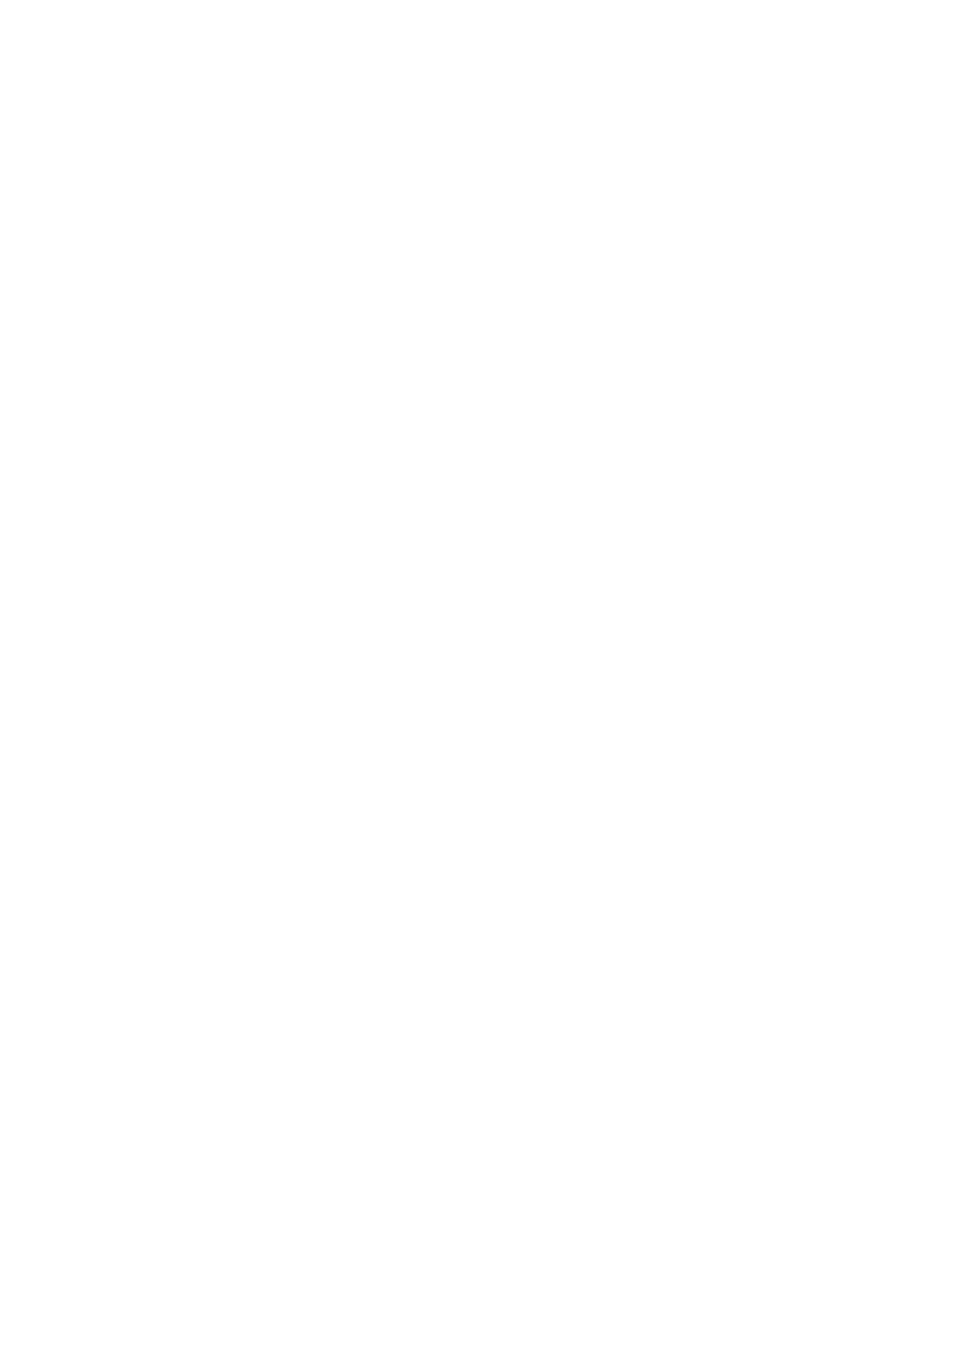 Λαογραφική αποστολή στα Διαπόντια νησιά : Ερείκουσα, Μαθράκι, 56 Οθωνοί. Αθήνα : 2012 5 57 ΣΩΤΗΡΙΟΥ Ι. ΤΣΙΑΝΗ. Δημοτικά Τραγούδια από τη Βυτίνα Αρκαδίας. Αθήνα, 2013 5 58 ΜΑΡ. Γ.